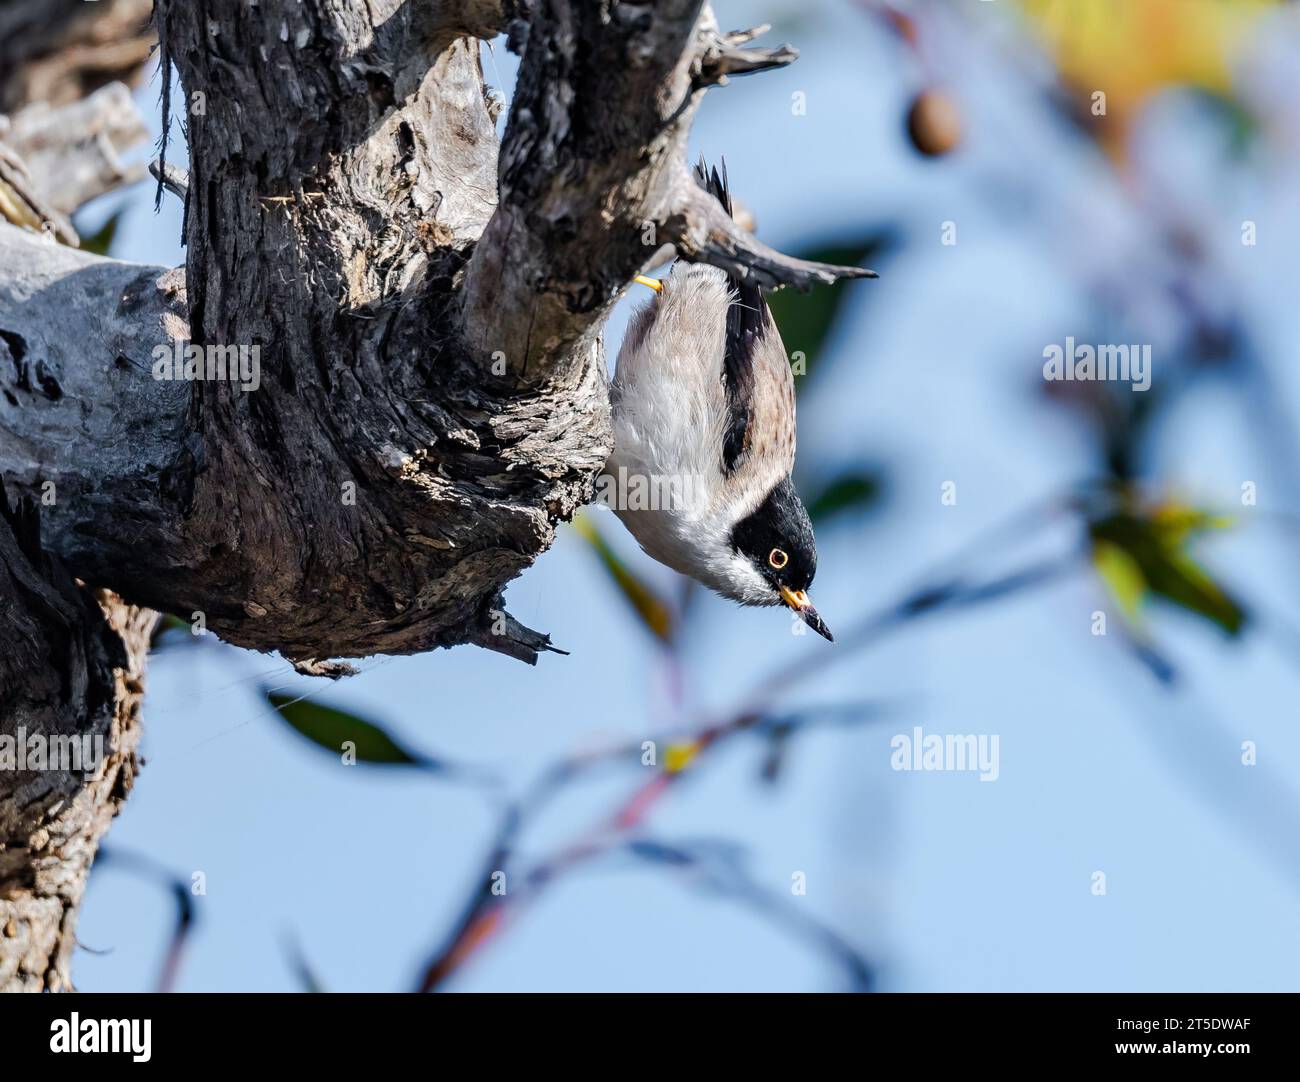 Une Sittella variée (Daphoenositta chrysoptera) se nourrissant sur un tronc d'arbre. Australie. Banque D'Images